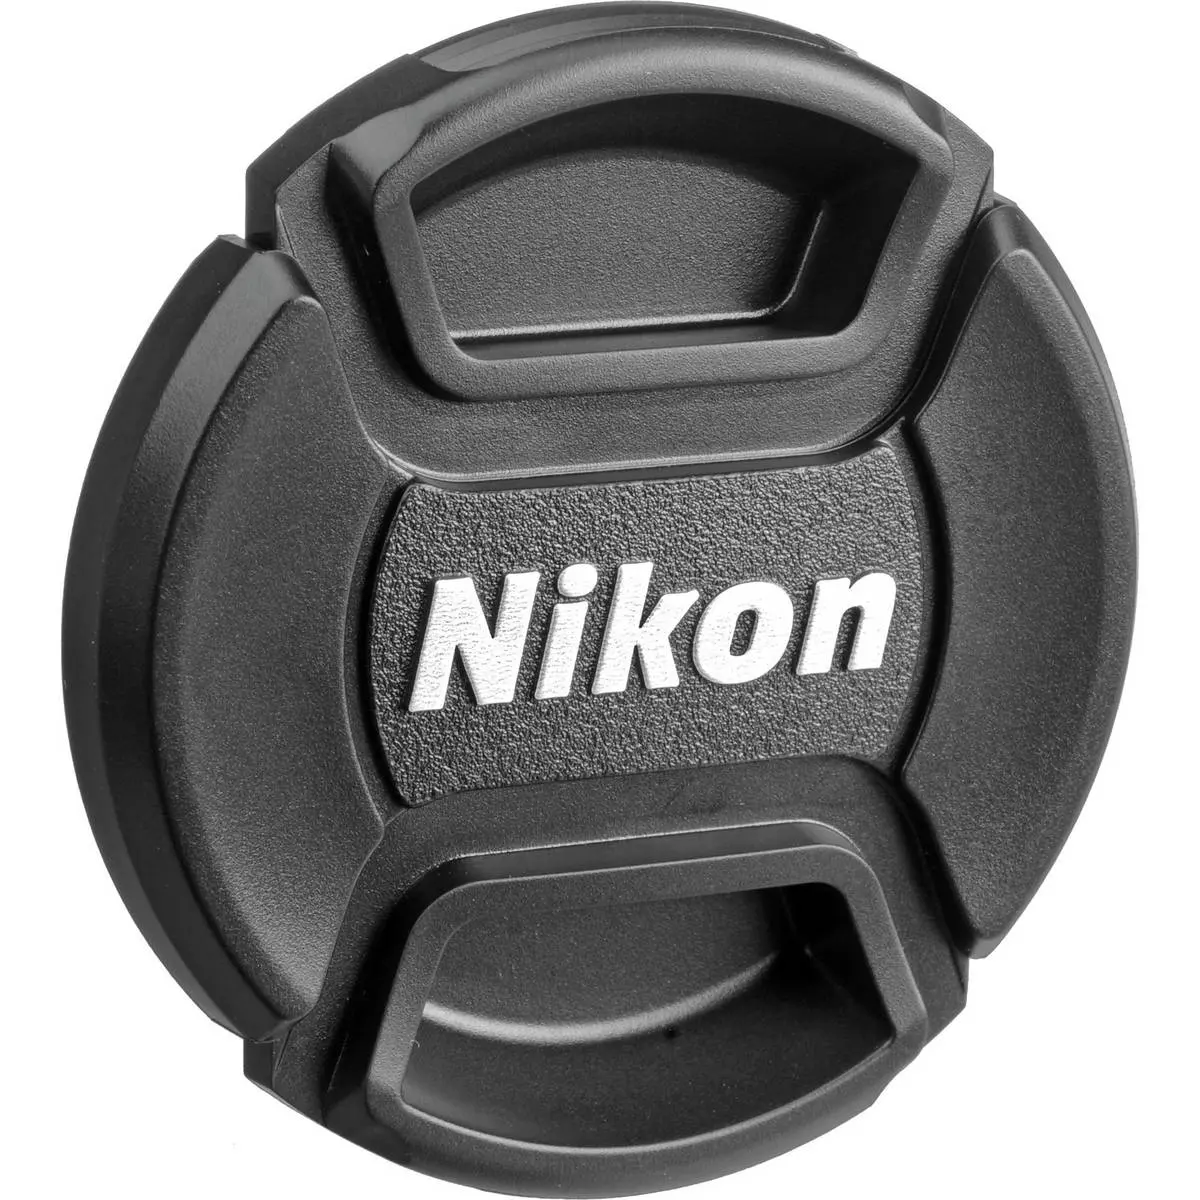 3. Nikon NIKKOR AF-S 35mm f/1.8G F1.8 G DX